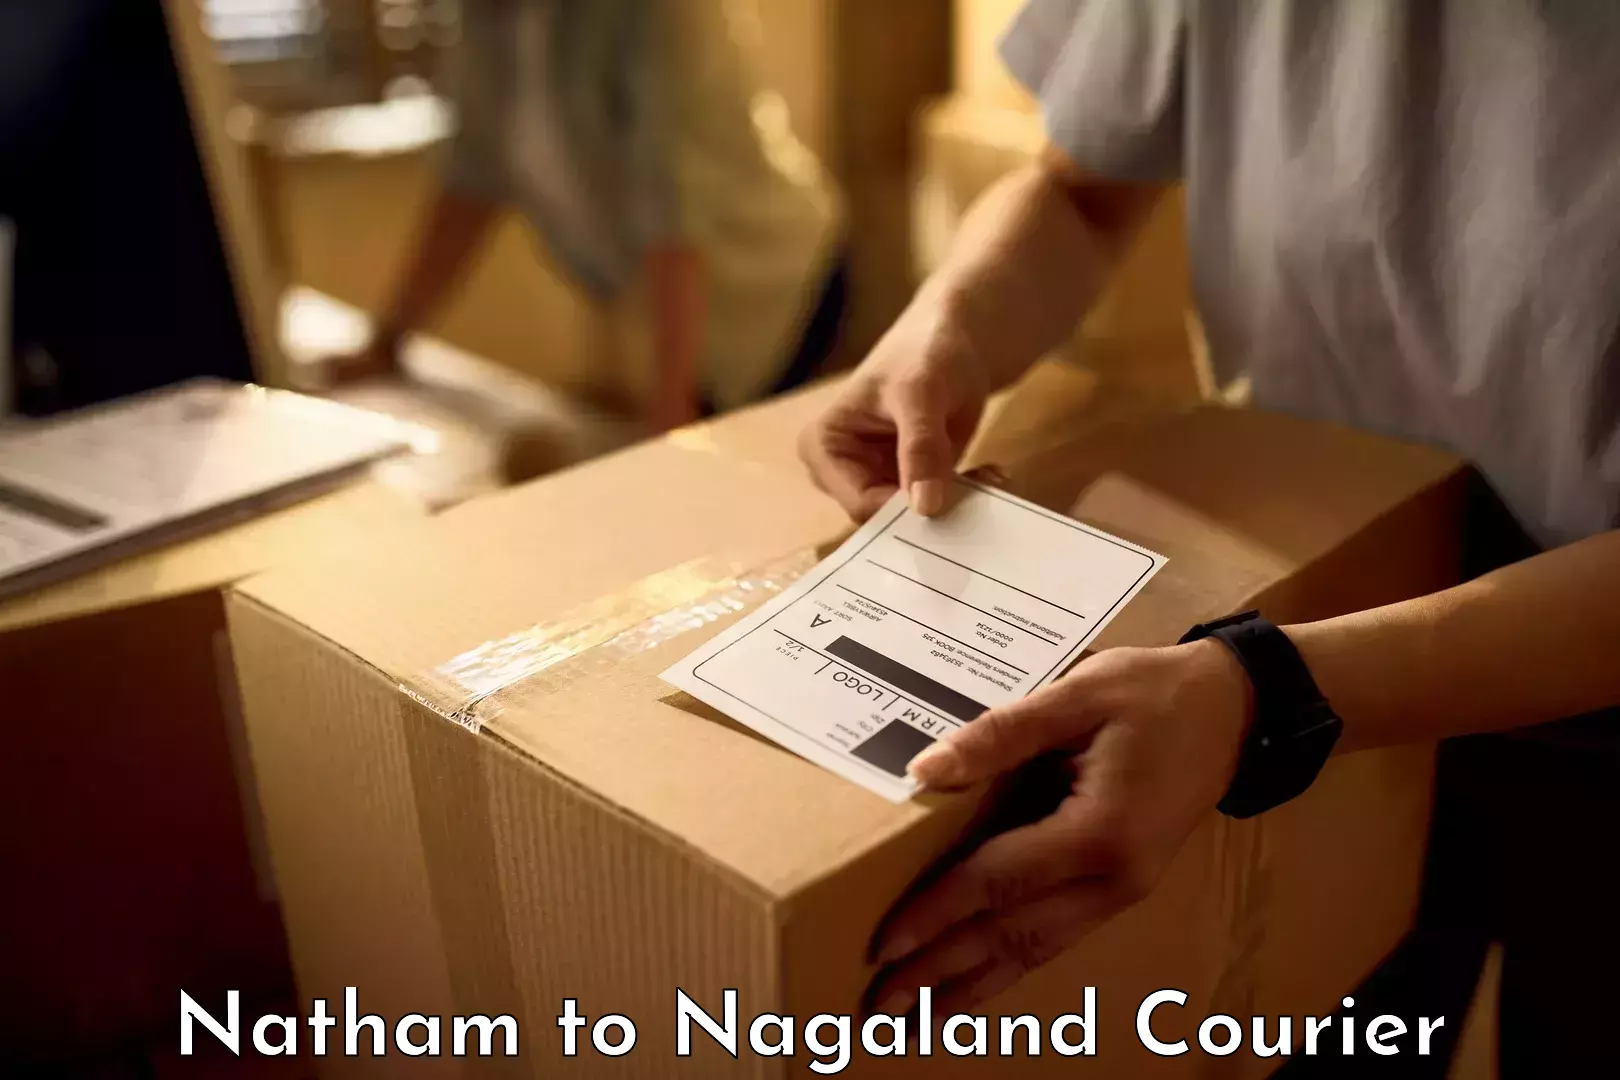 Luggage transport operations Natham to Nagaland